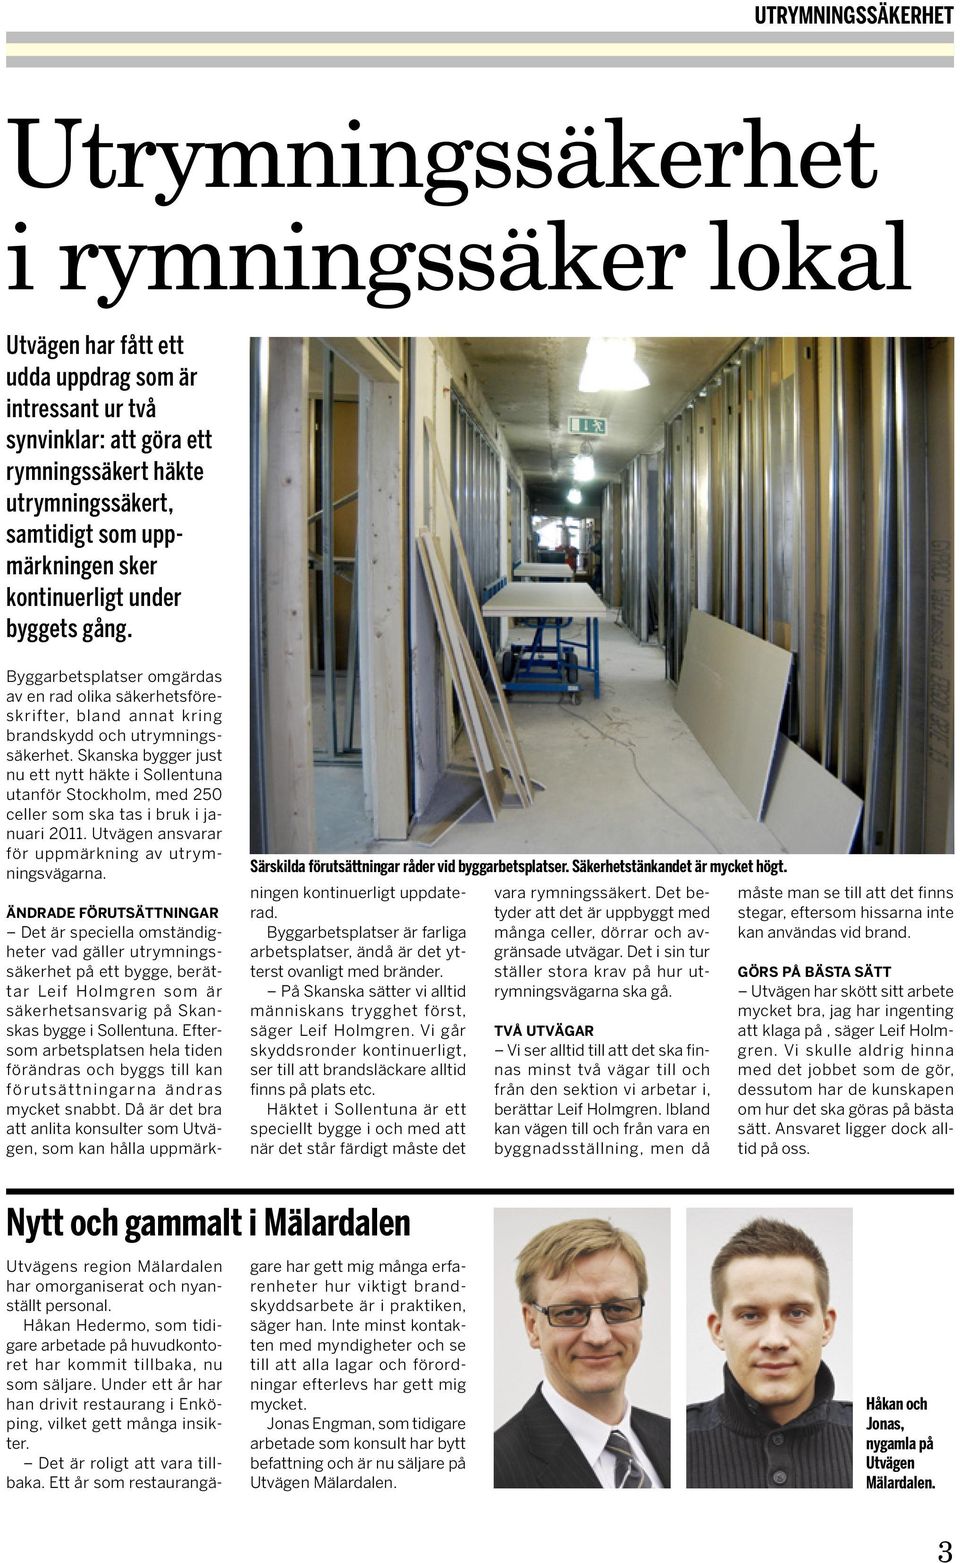 Skanska bygger just nu ett nytt häkte i Sollentuna utanför Stockholm, med 250 celler som ska tas i bruk i januari 2011. Utvägen ansvarar för uppmärkning av utrymningsvägarna.